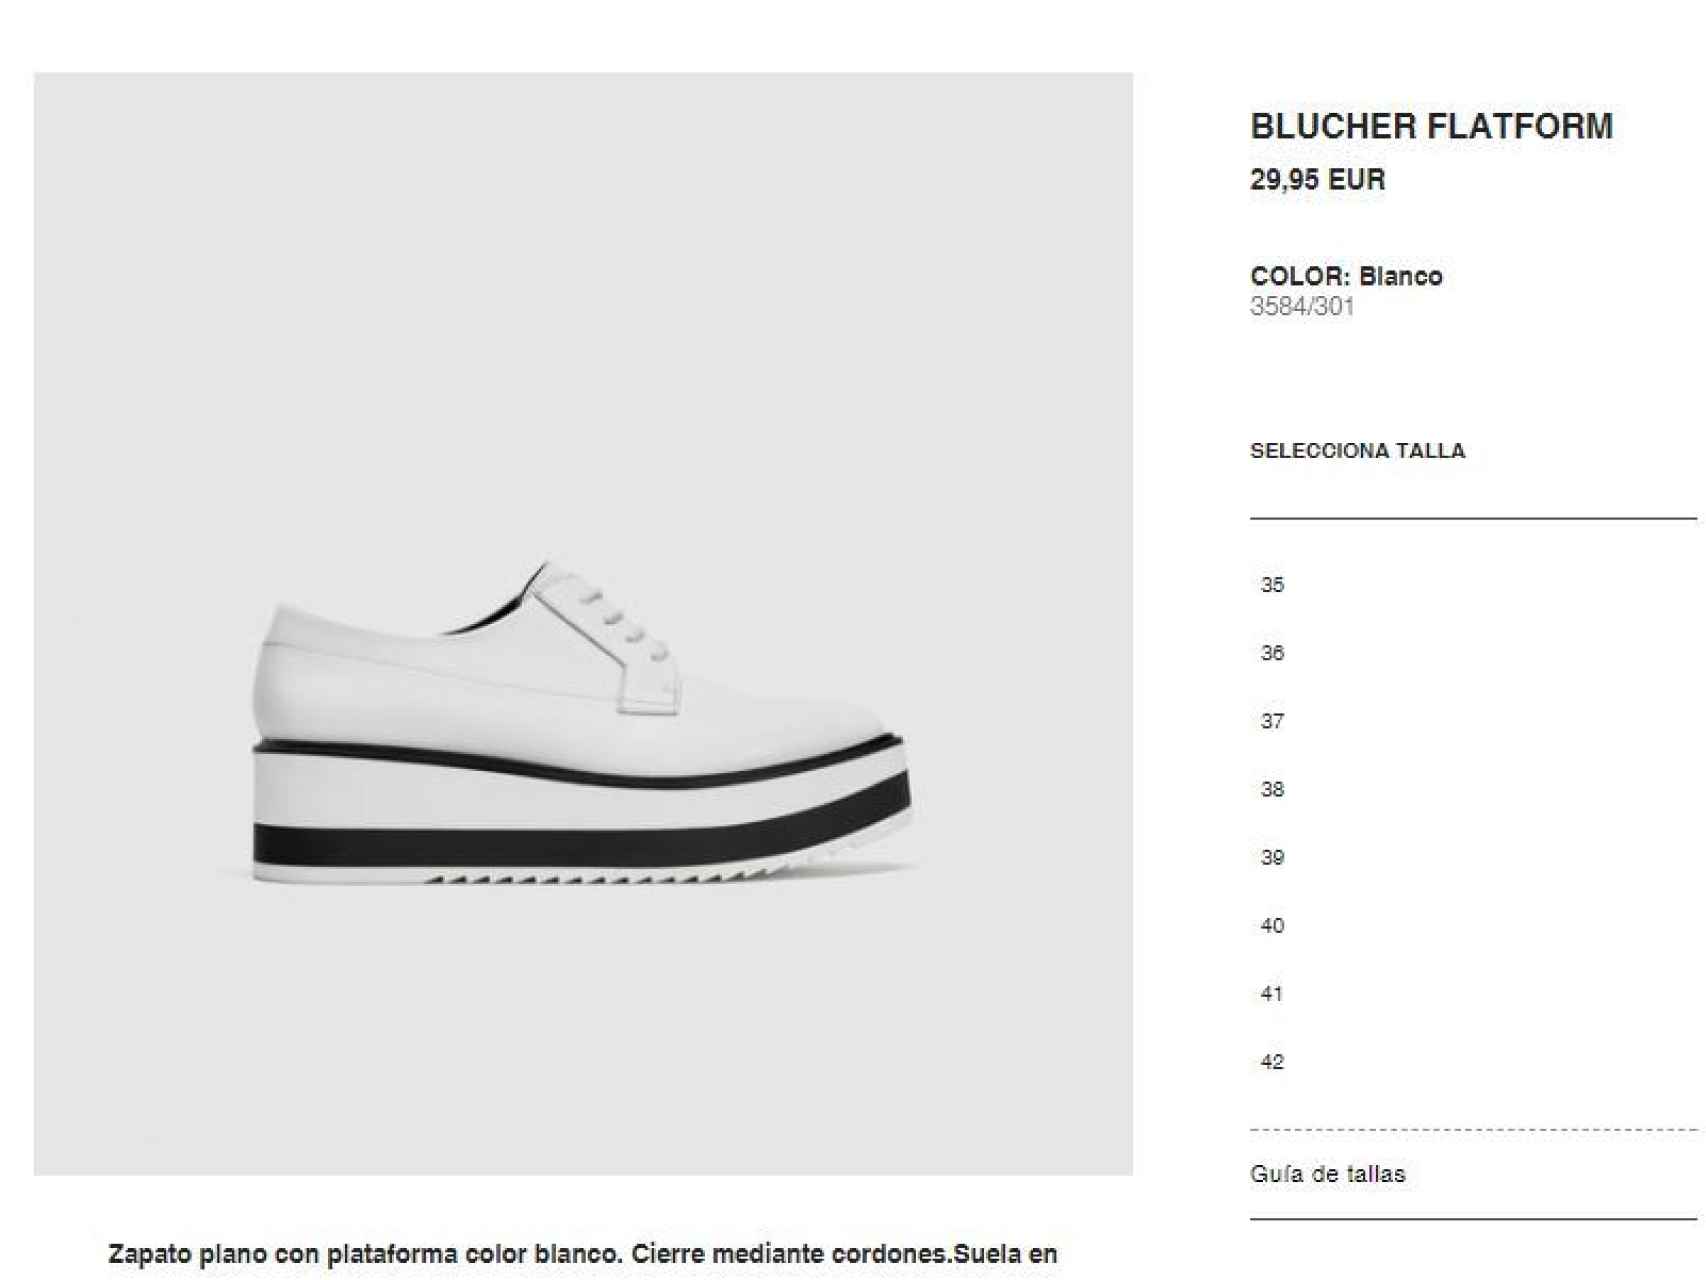 Captura de la compra online  de los zapatos.